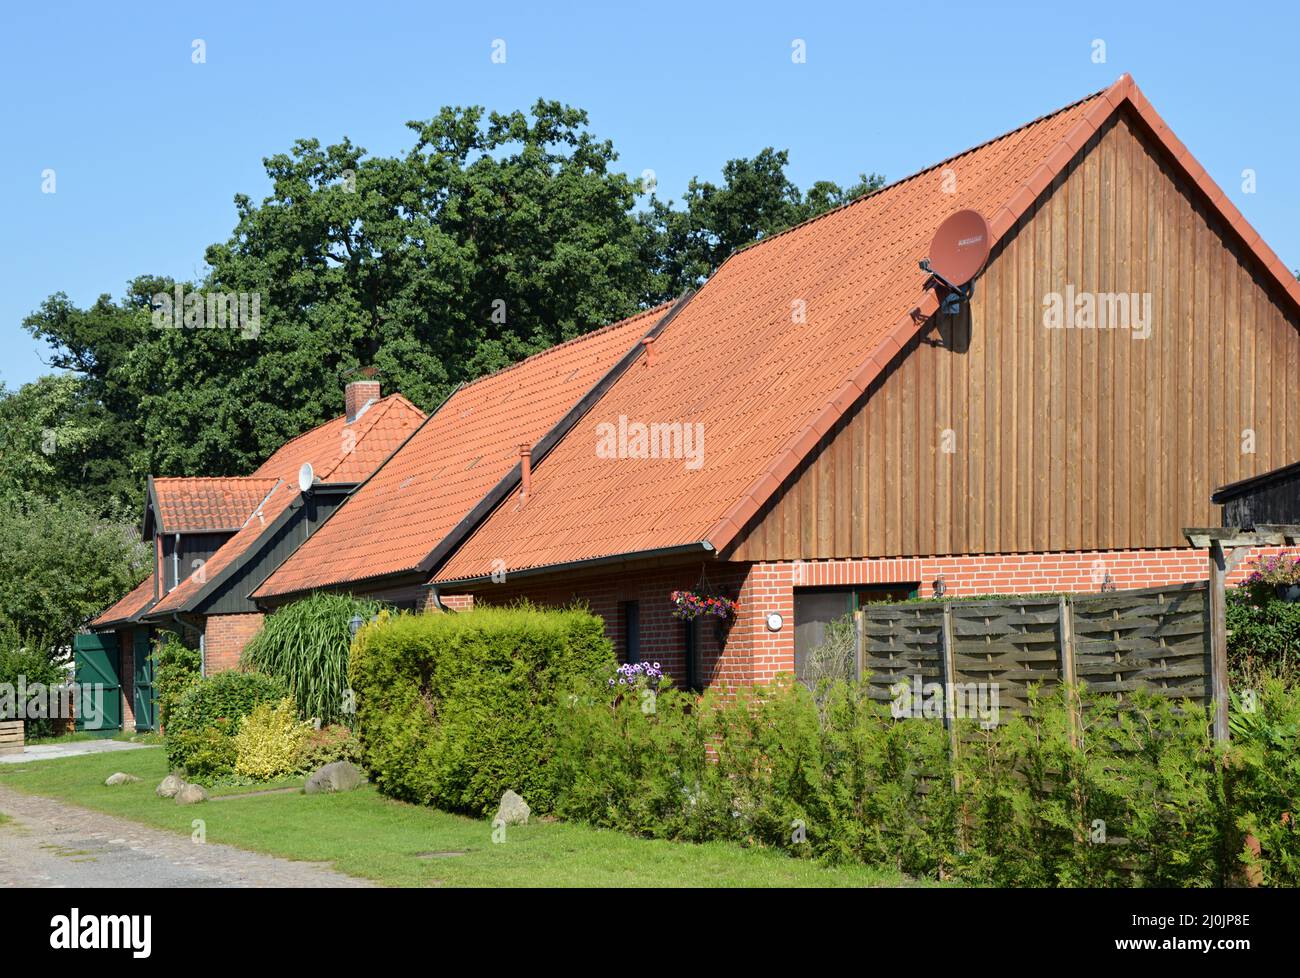 Typische norddeutsche Architektur im Dorf Ahlden, Niedersachsen Stockfoto